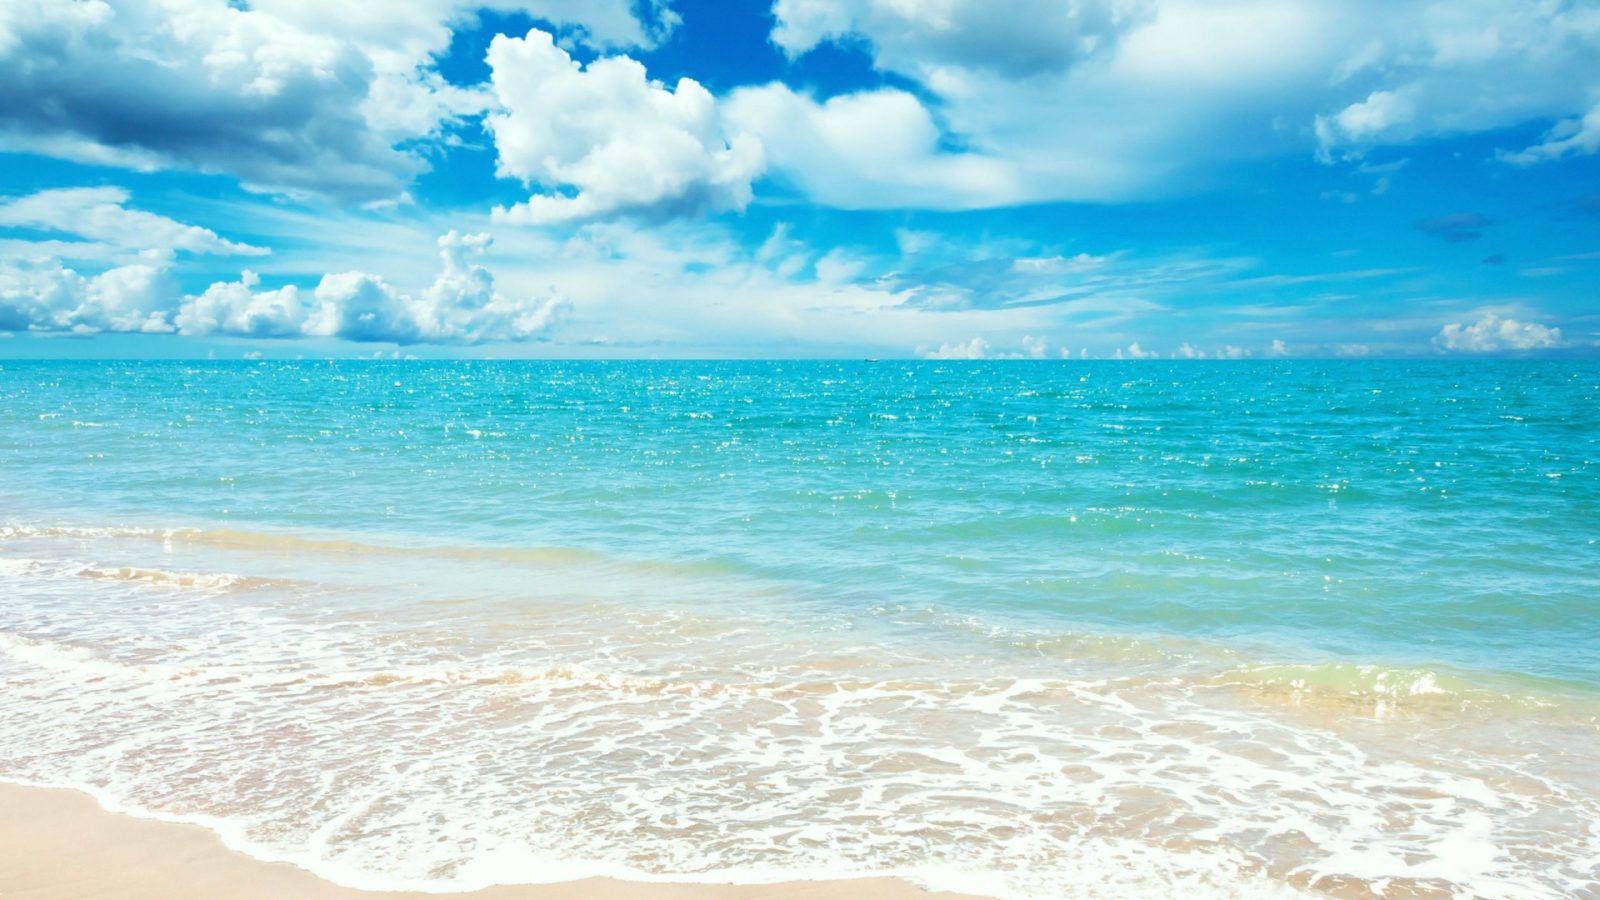 Bạn yêu thích bãi biển và muốn biến desktop của mình thành một bức tranh ấn tượng với cảnh biển và bờ cát trắng? Truy cập ngay vào WallpaperDog - bộ sưu tập hình nền desktop mà fan hâm mộ của nó không thể bỏ qua! Với hơn hàng nghìn mẫu nền desktop bãi biển đa dạng và đầy màu sắc, bạn sẽ tự tay tìm thấy một mẫu hình nền đẹp nhất phù hợp với phong cách của mình.